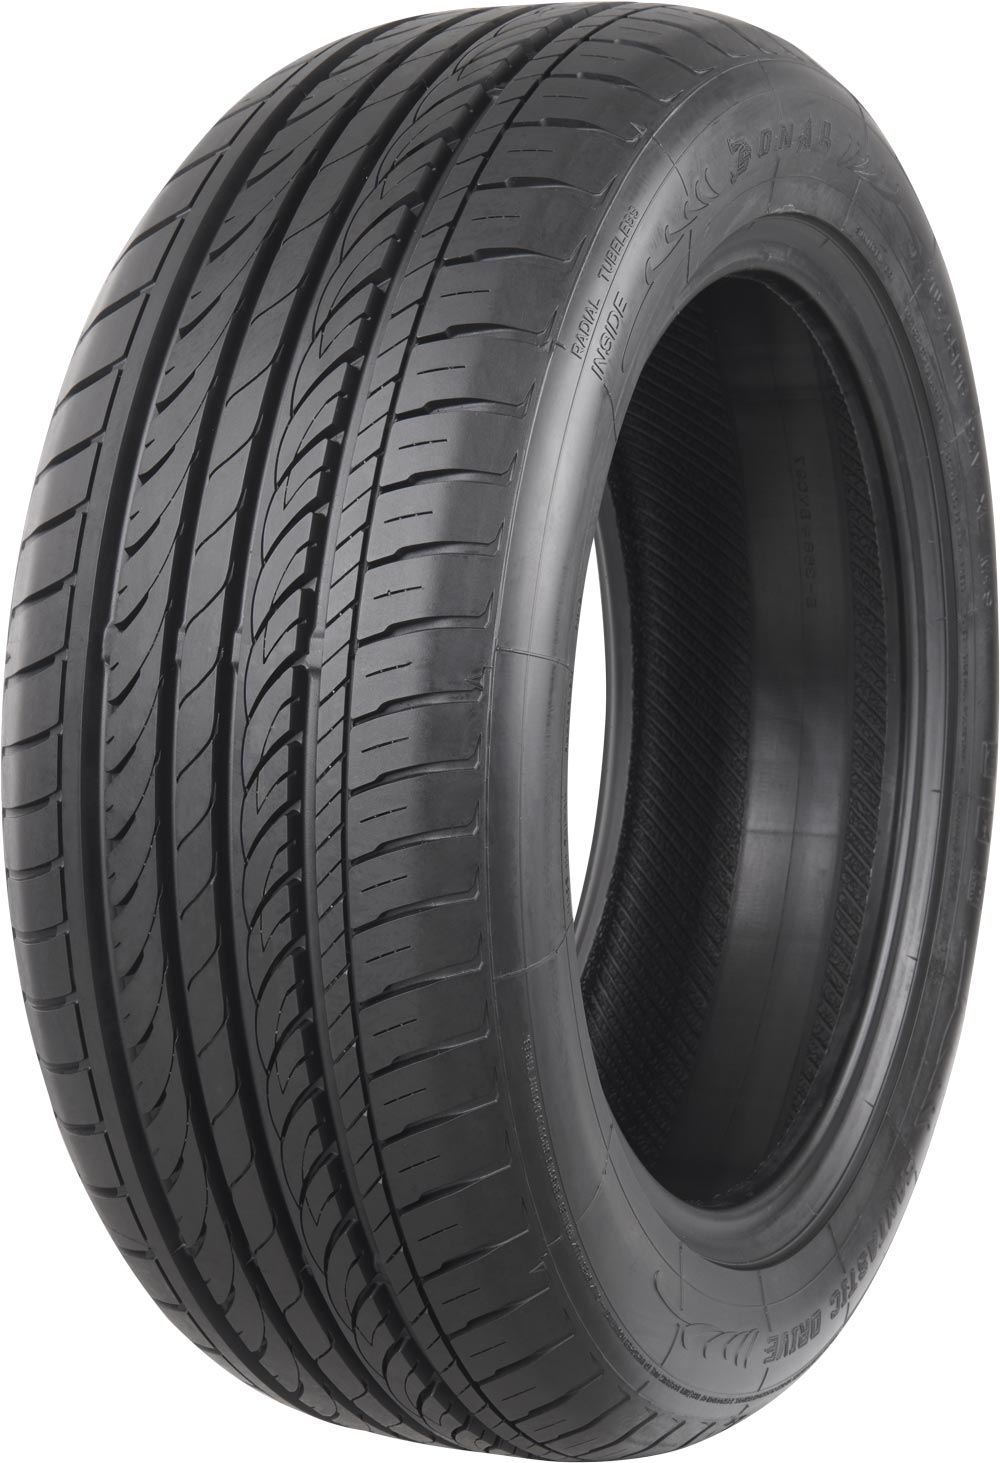 Автомобилни гуми SONAR SX-2 XL 245/45 R18 100W